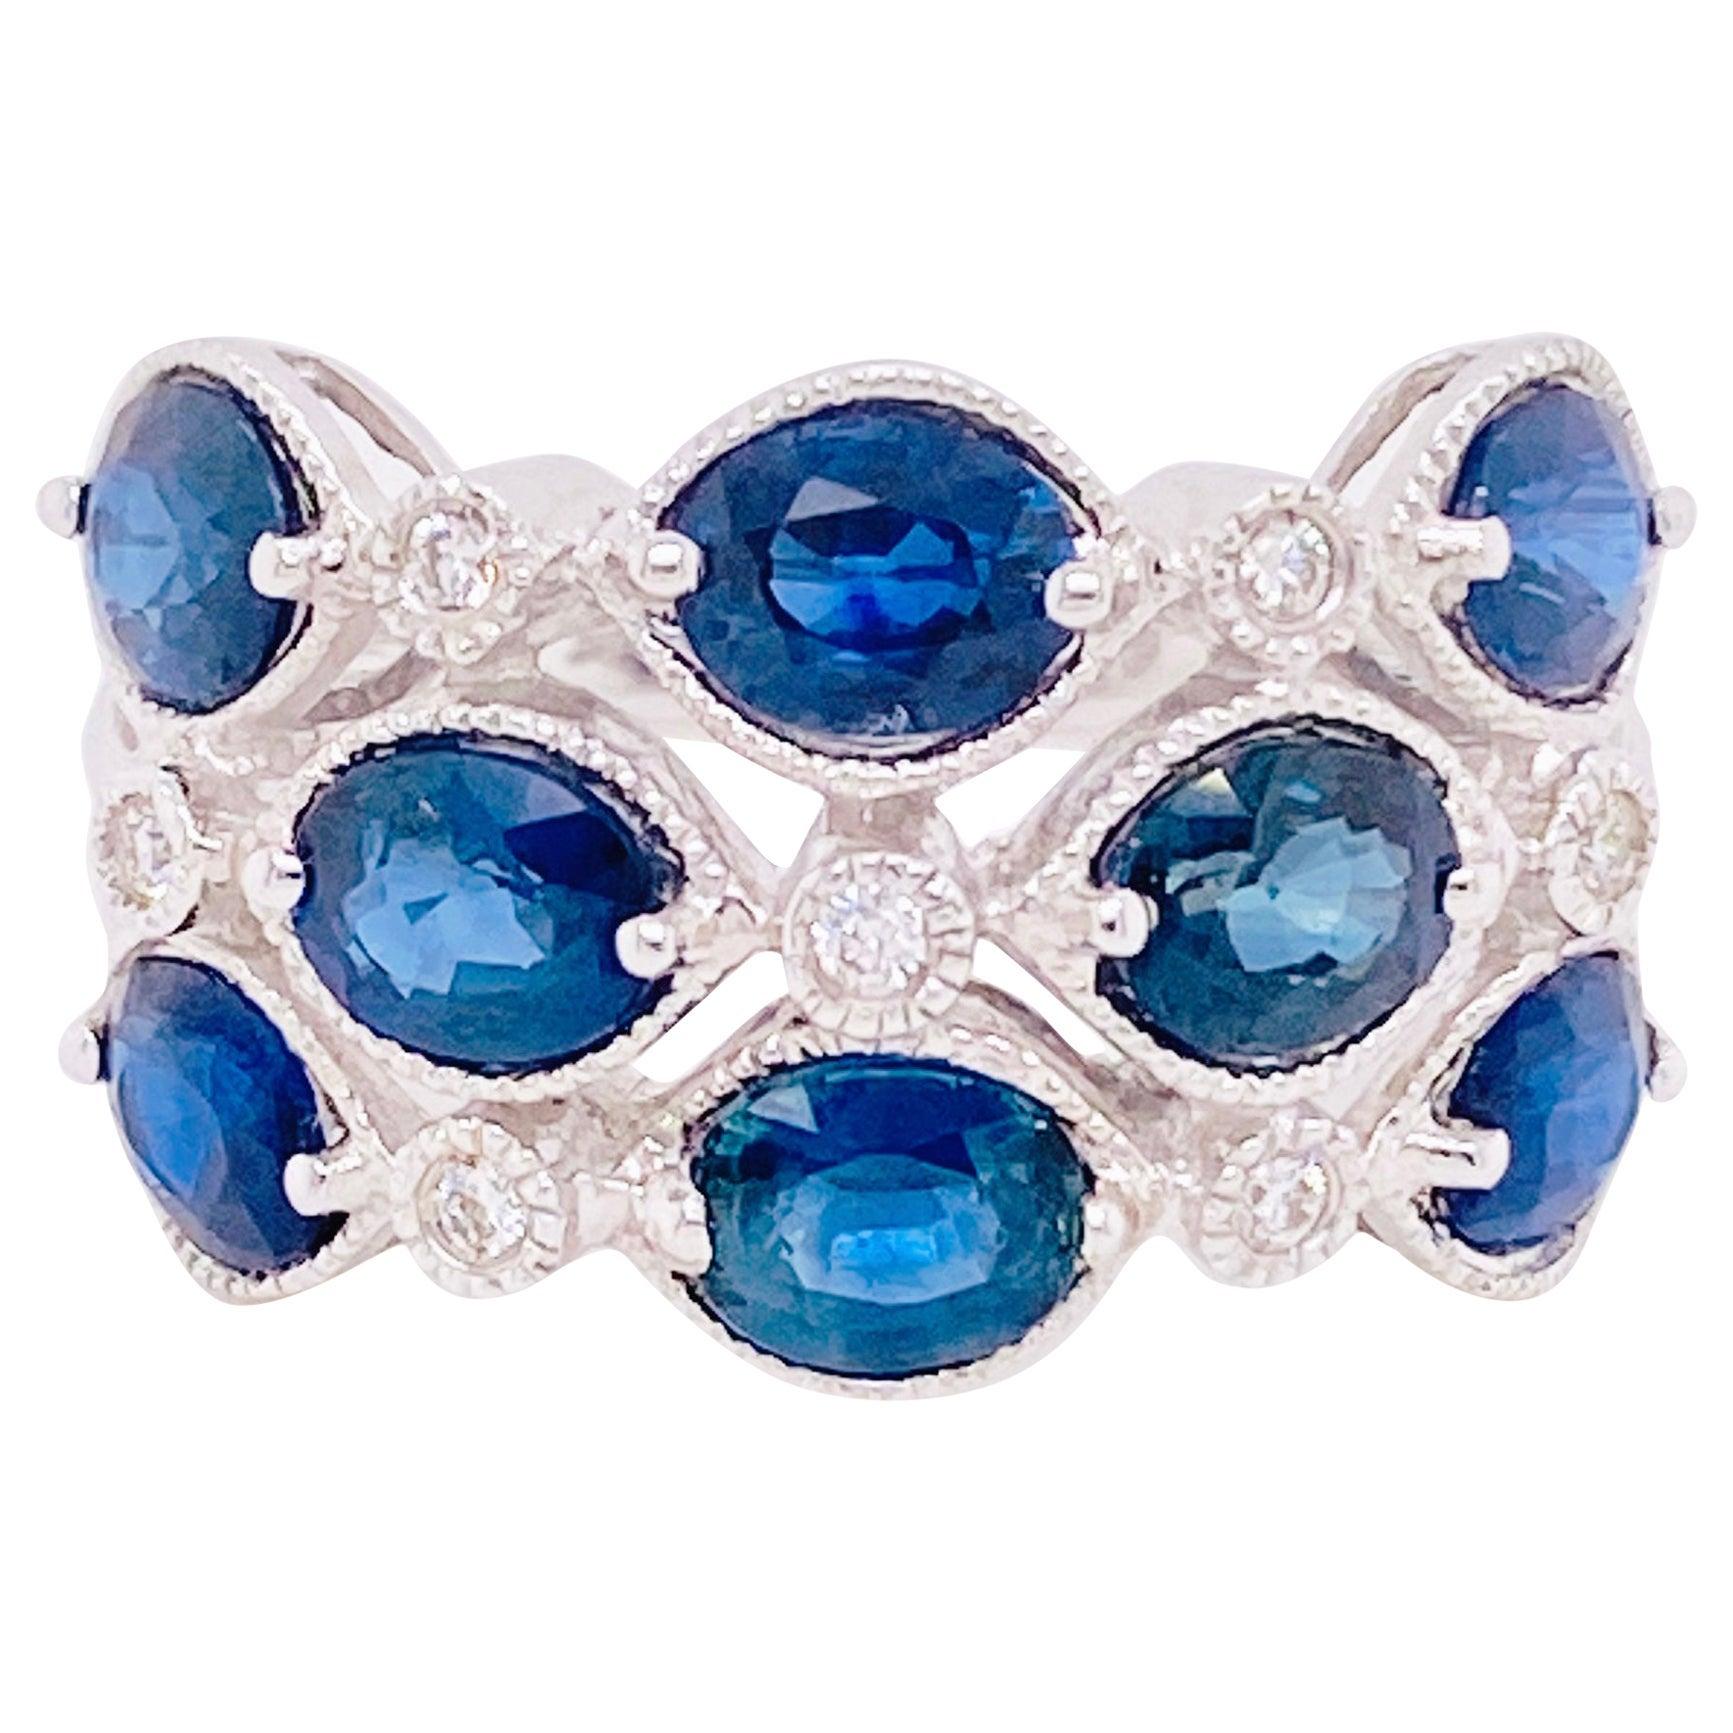 4 Carat Blue Sapphire & Diamond Fashion Ring 14 Karat Gold 3.75ct Cocktail Ring